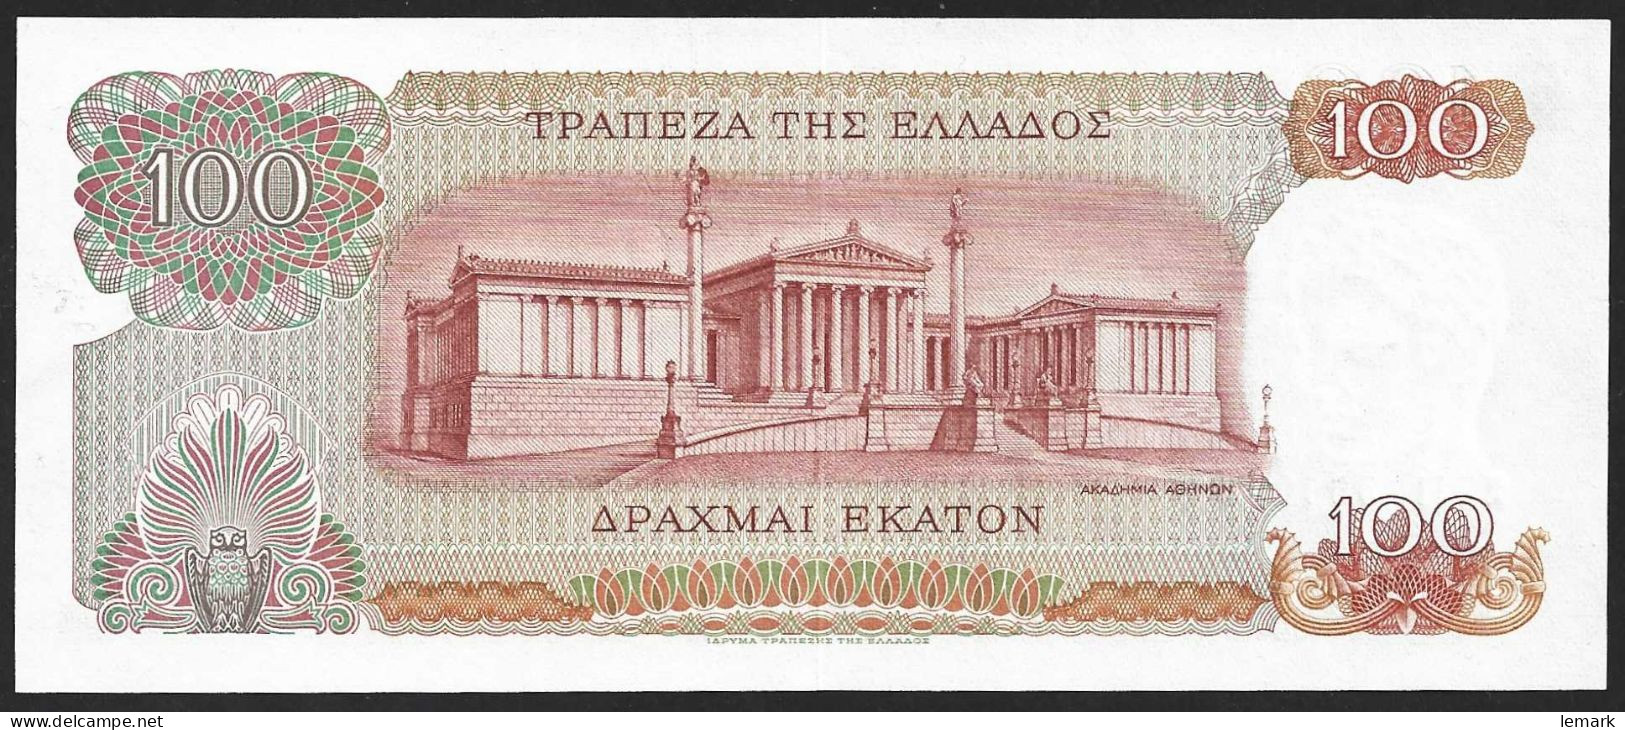 Greece 100 Drachnai 1967 P196b UNC - Greece